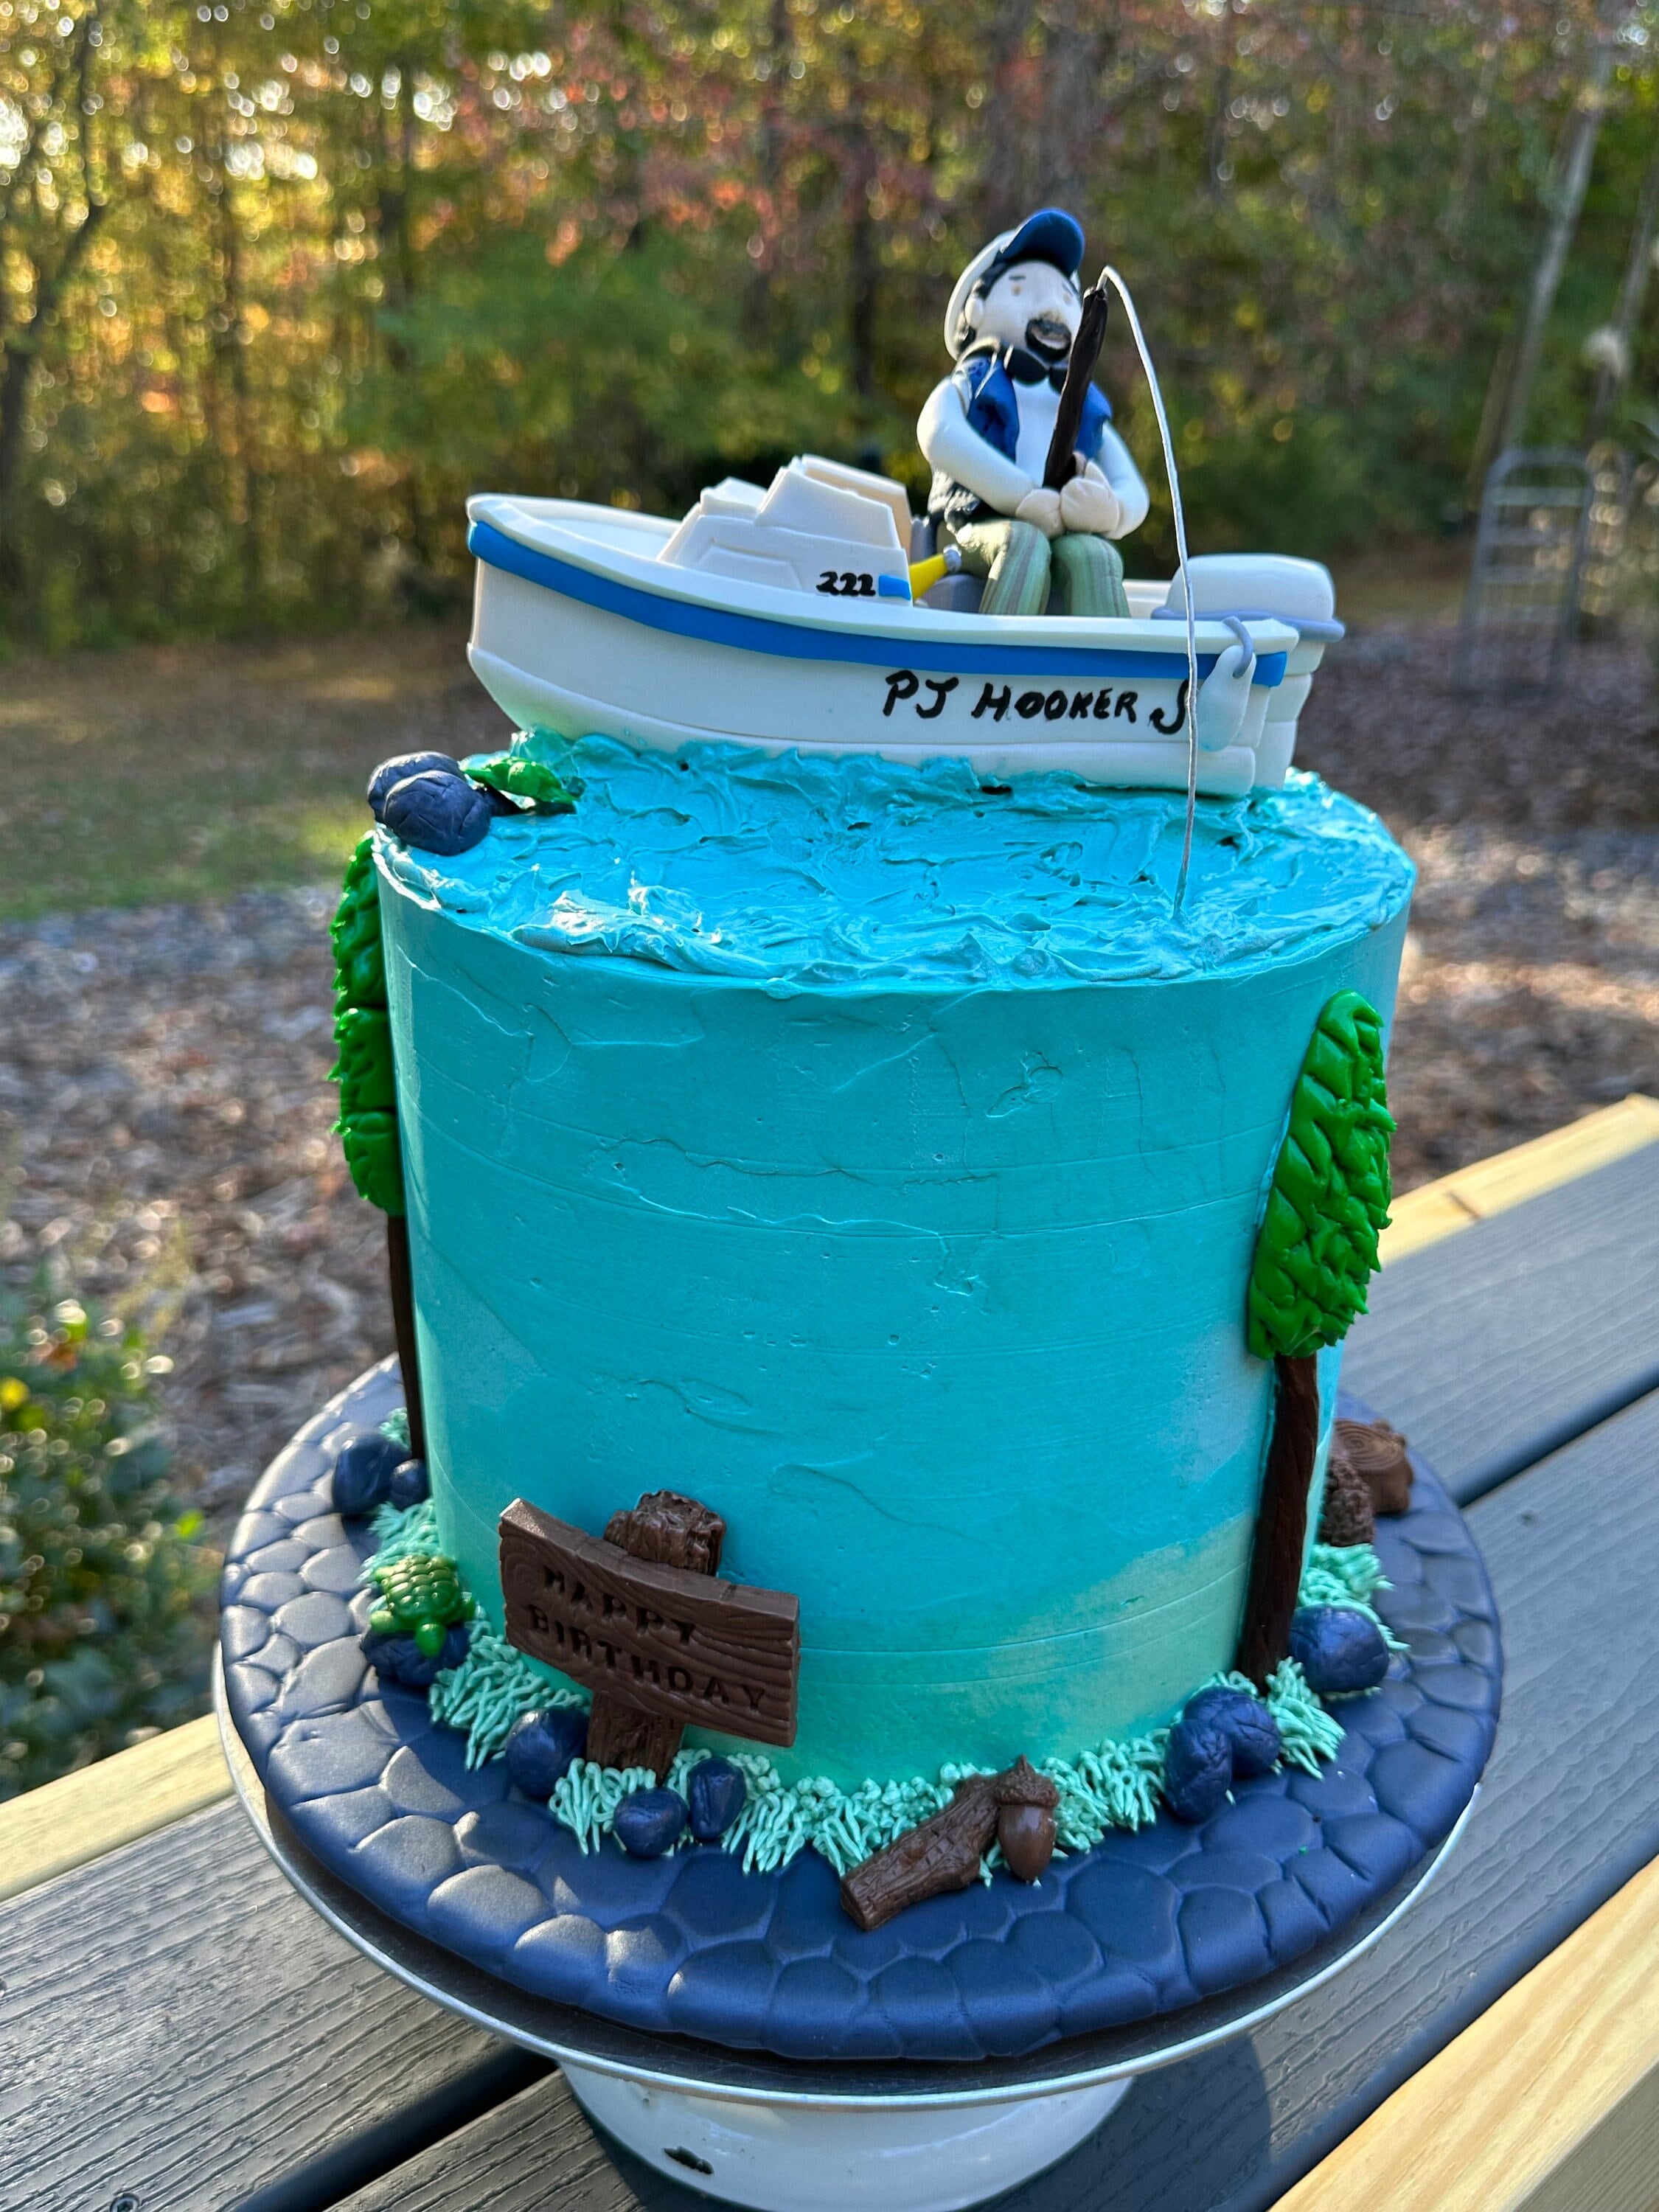 Fishing boat - fishermen - custom made cake decoration - lake life -  fondant cake decoration